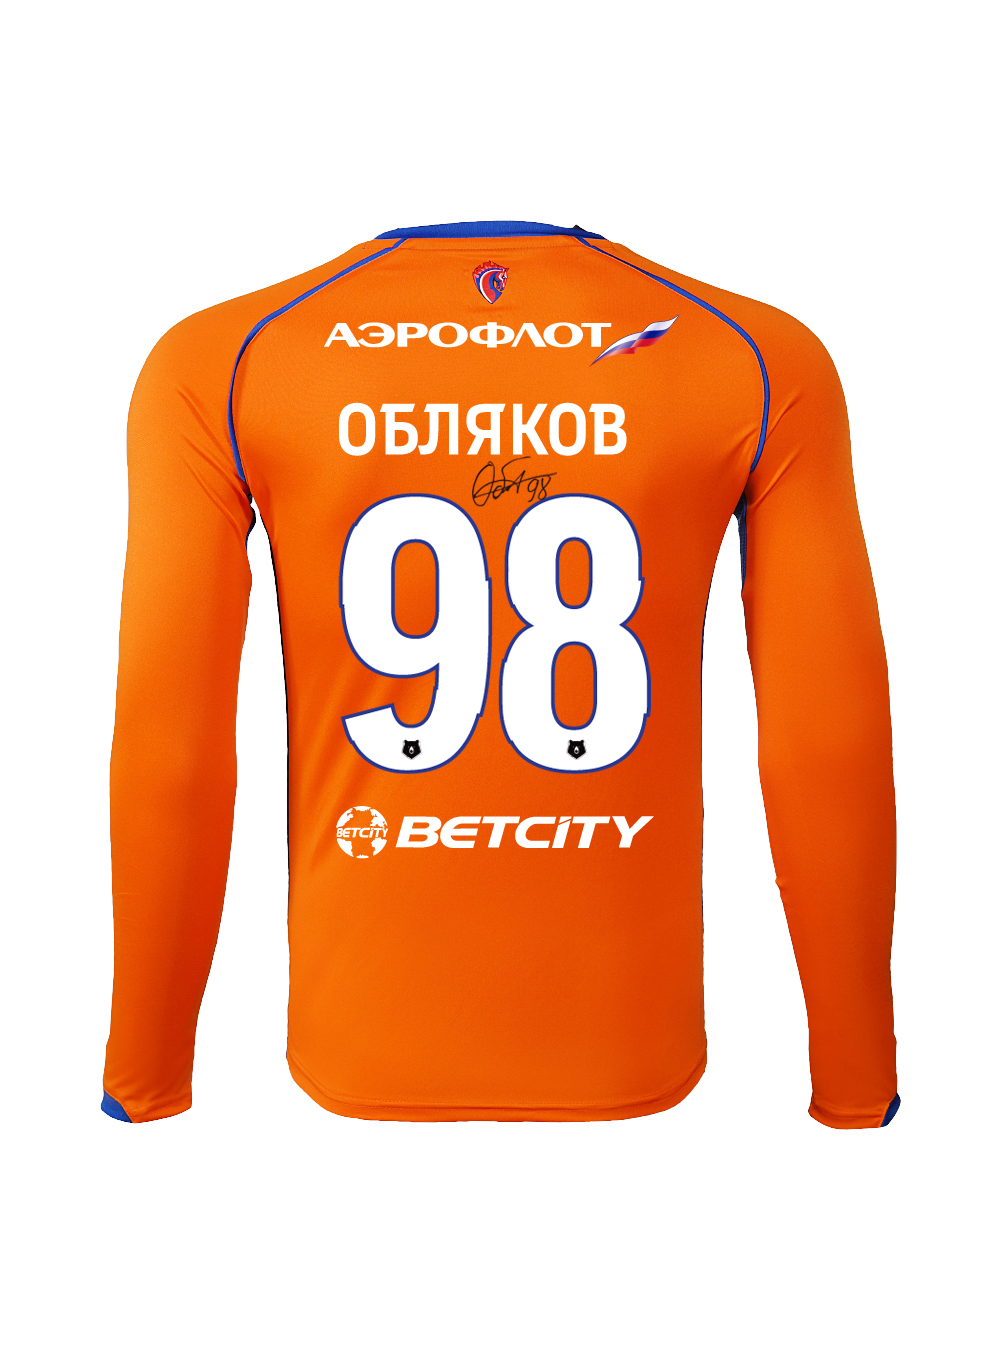 Купить Футболка игровая резервная с длинным рукавом с автографом ОБЛЯКОВА (S) по Нижнему Новгороду